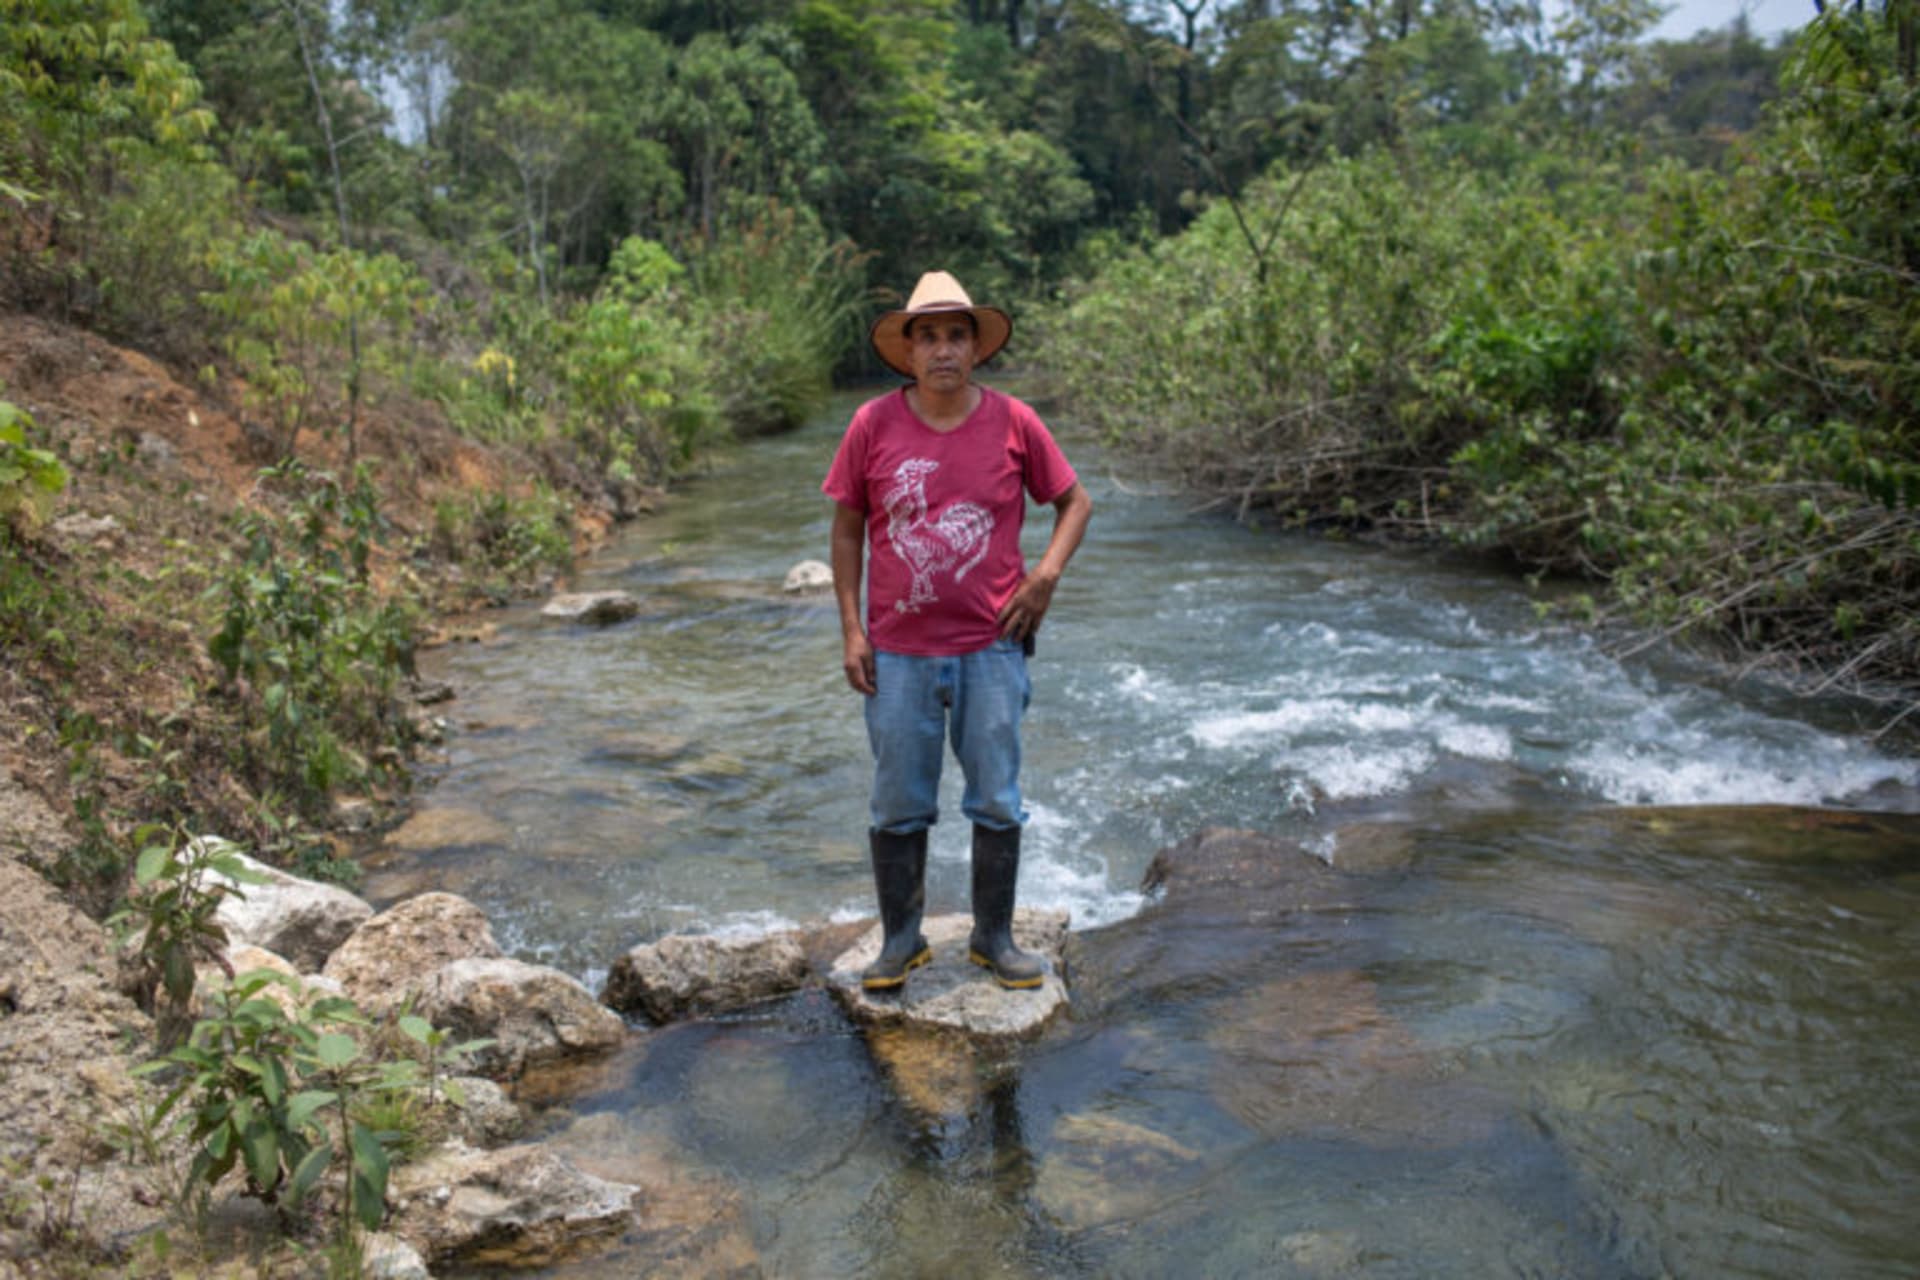 Lucas Jorge García, člen Peaceful Resistance (Klidný odpor), se staví proti výstavbě vodní elektrárny v Guatemale. Zdroj: Global Witness